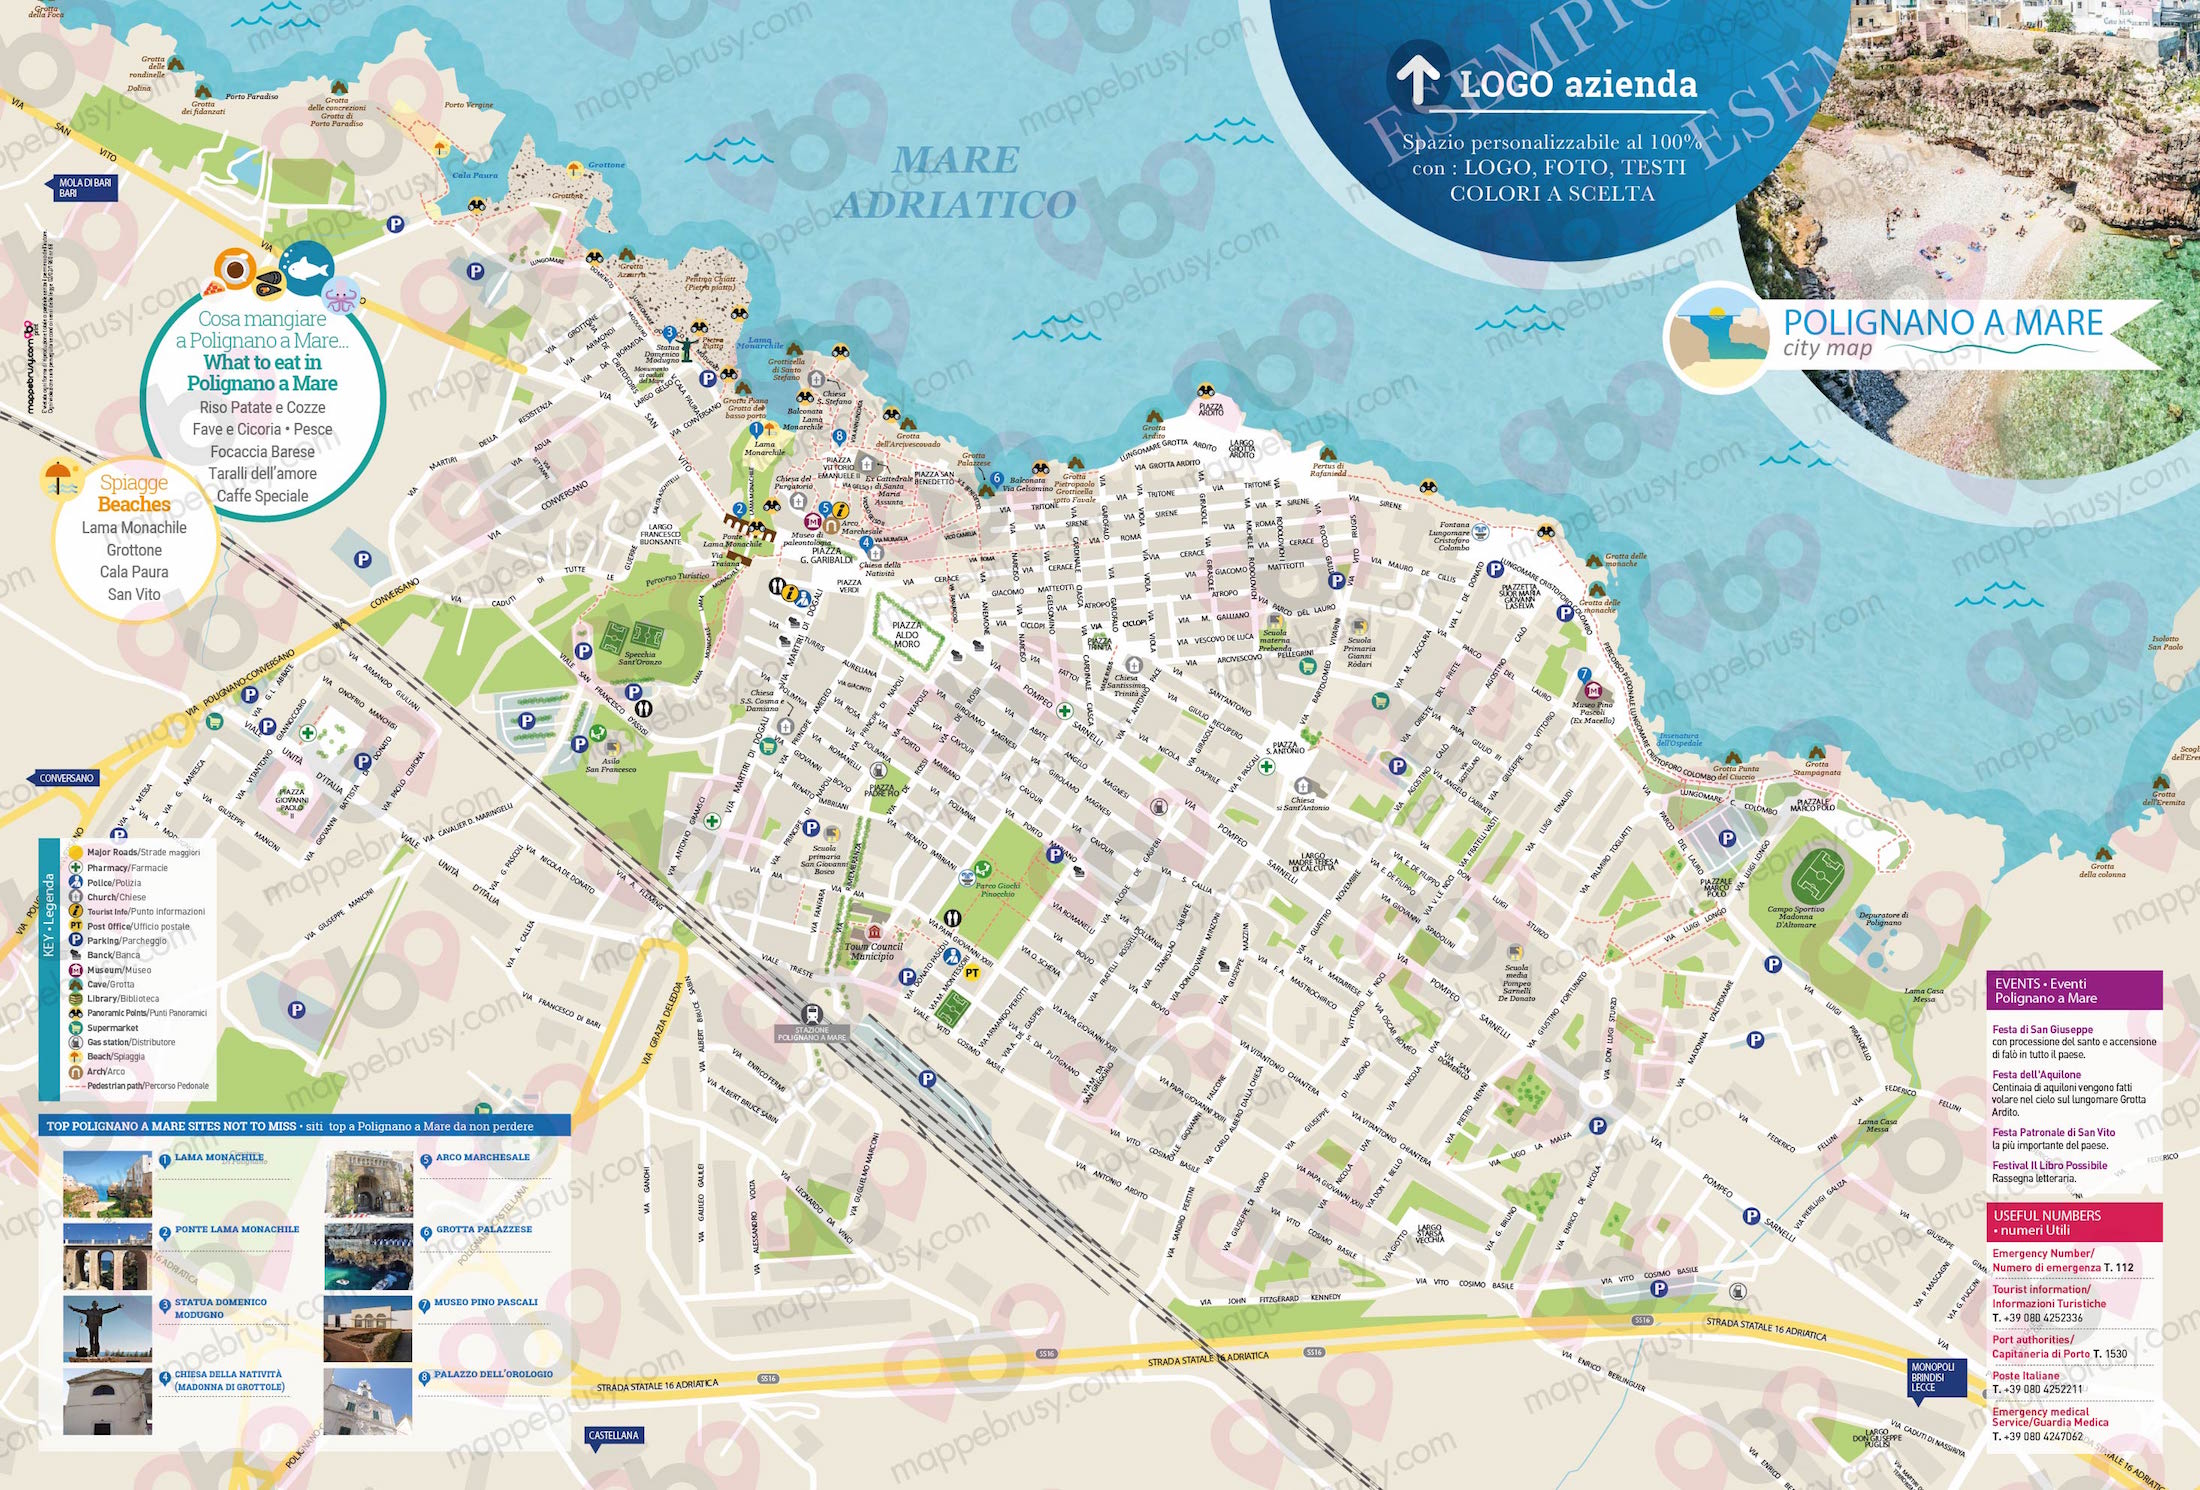 Mappa di Polignano a Mare - Polignano a Mare city map - mappa Polignano a Mare - mappa personalizzata di Polignano a Mare